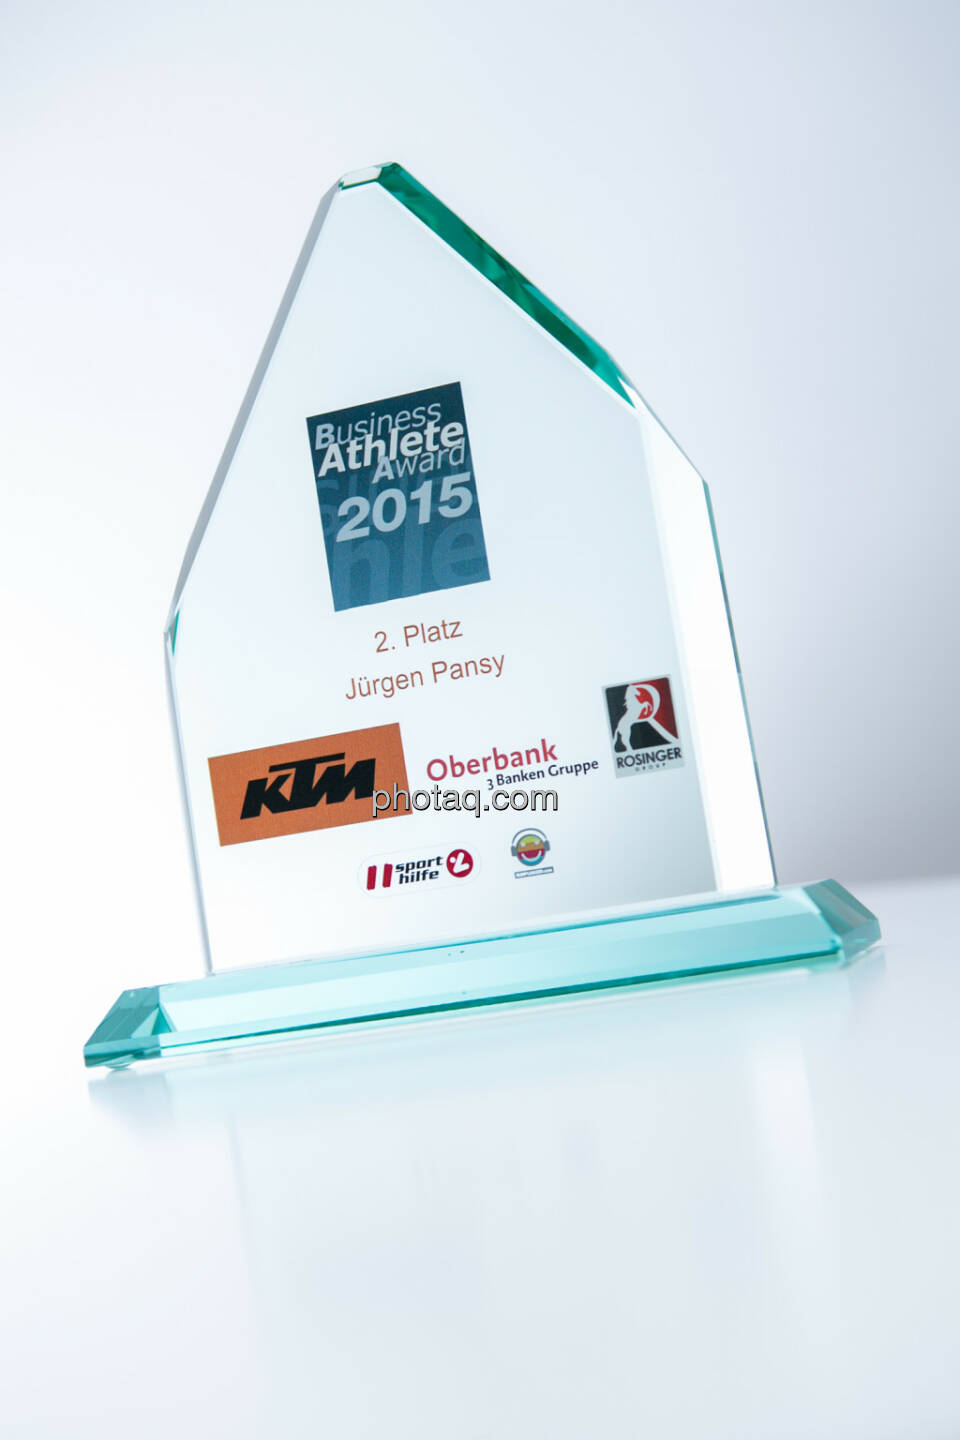 Business Athlete Award 2015 Platz 2 Jürgen Pansy